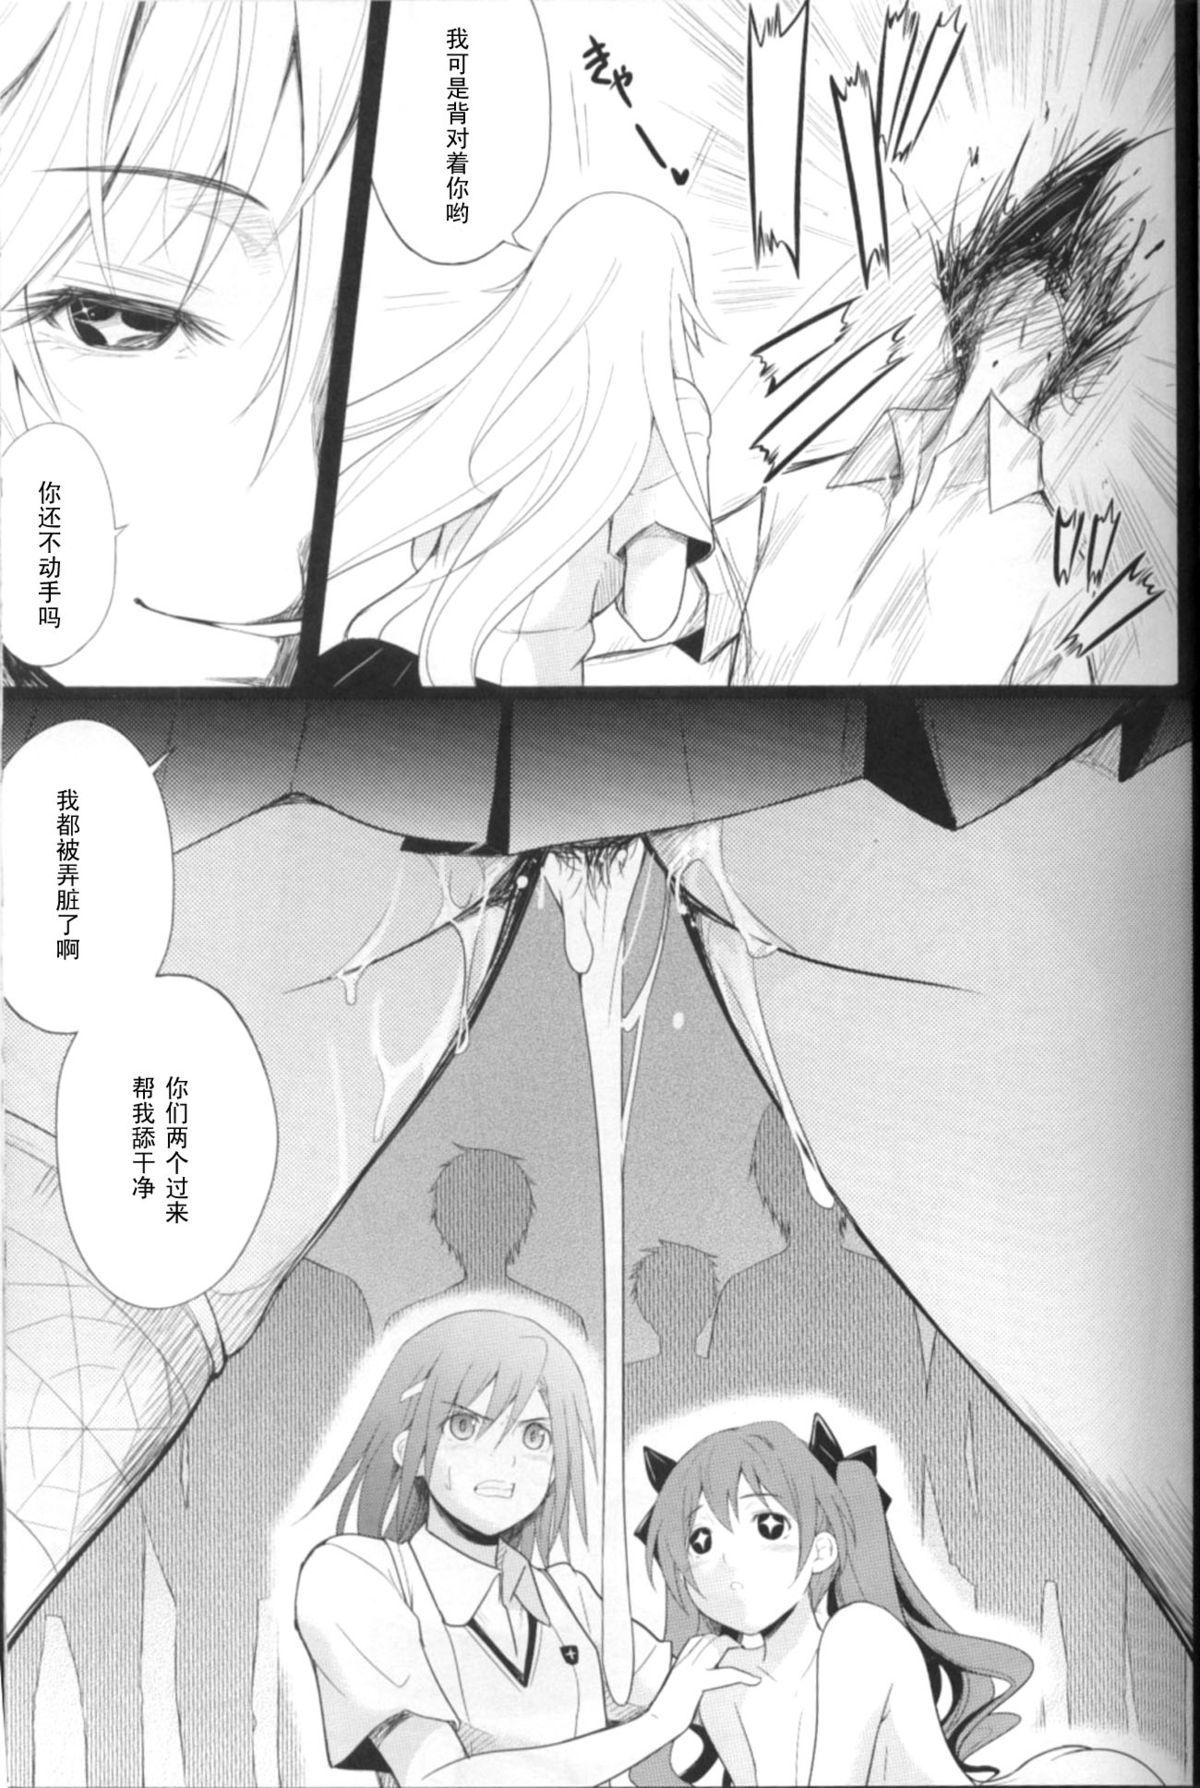 Strip Joou Gumo - Toaru kagaku no railgun Bbw - Page 10